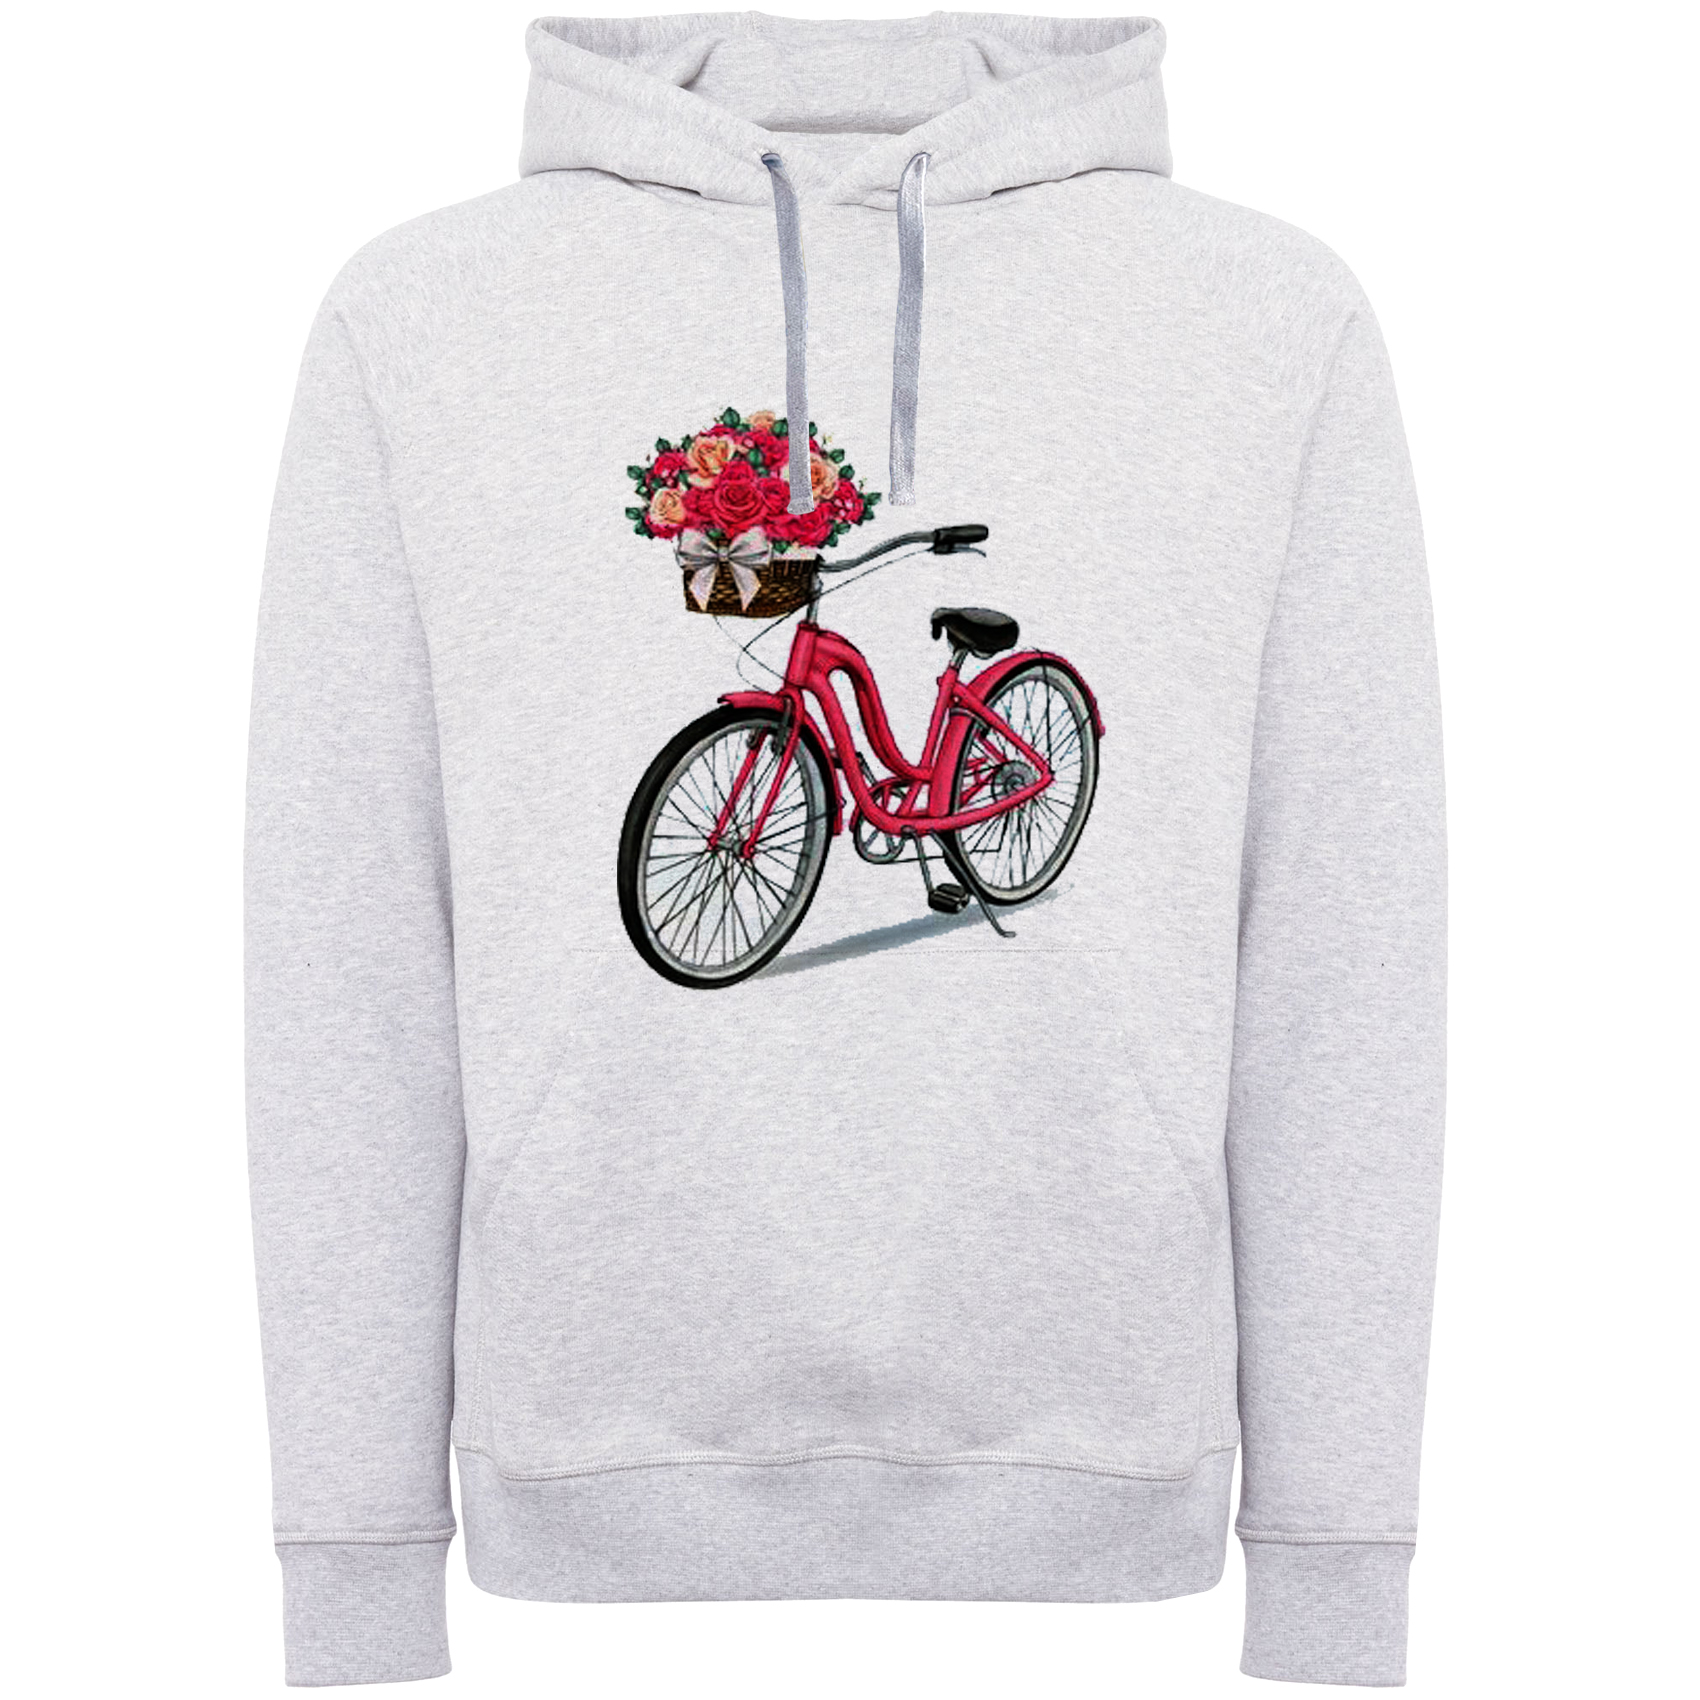 هودی زنانه مدل دوچرخه و گل کد A145